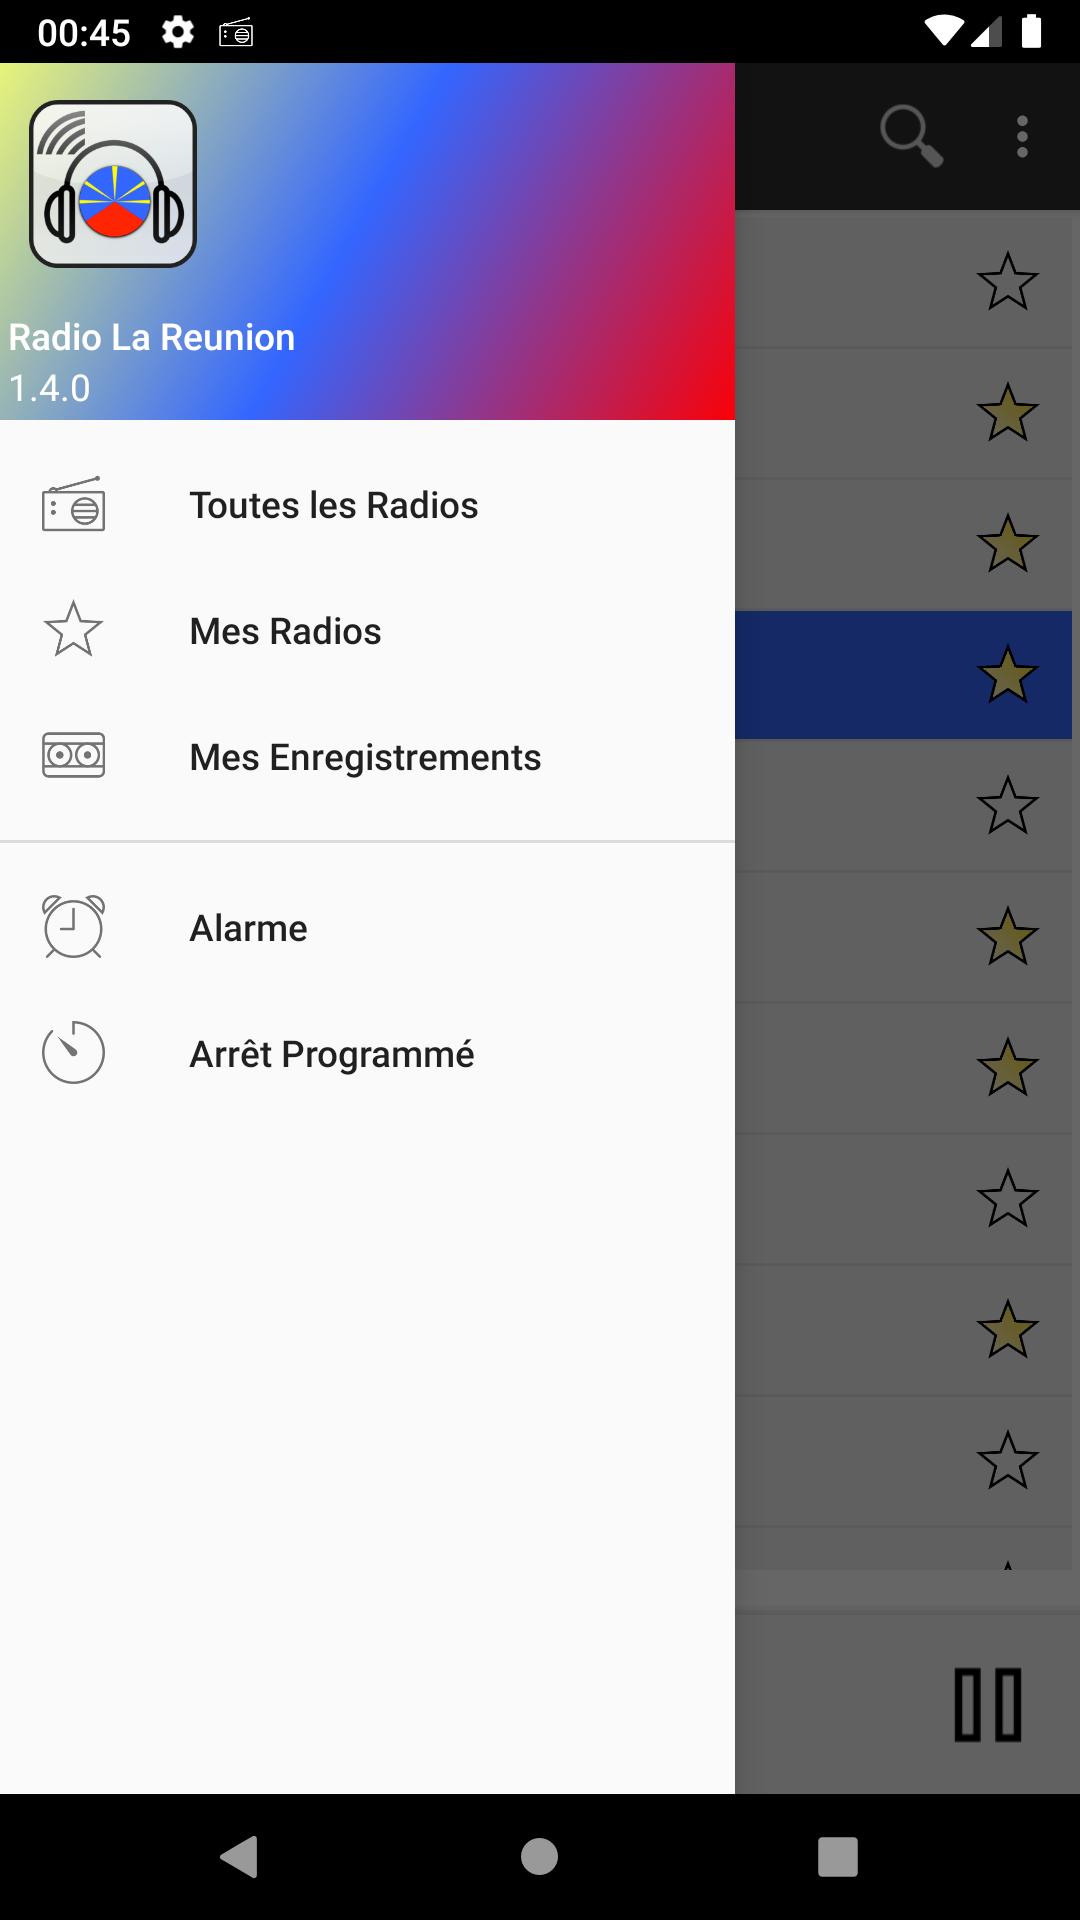 RADIO LA REUNION : Radios Réunionnaises en direct for Android - APK Download